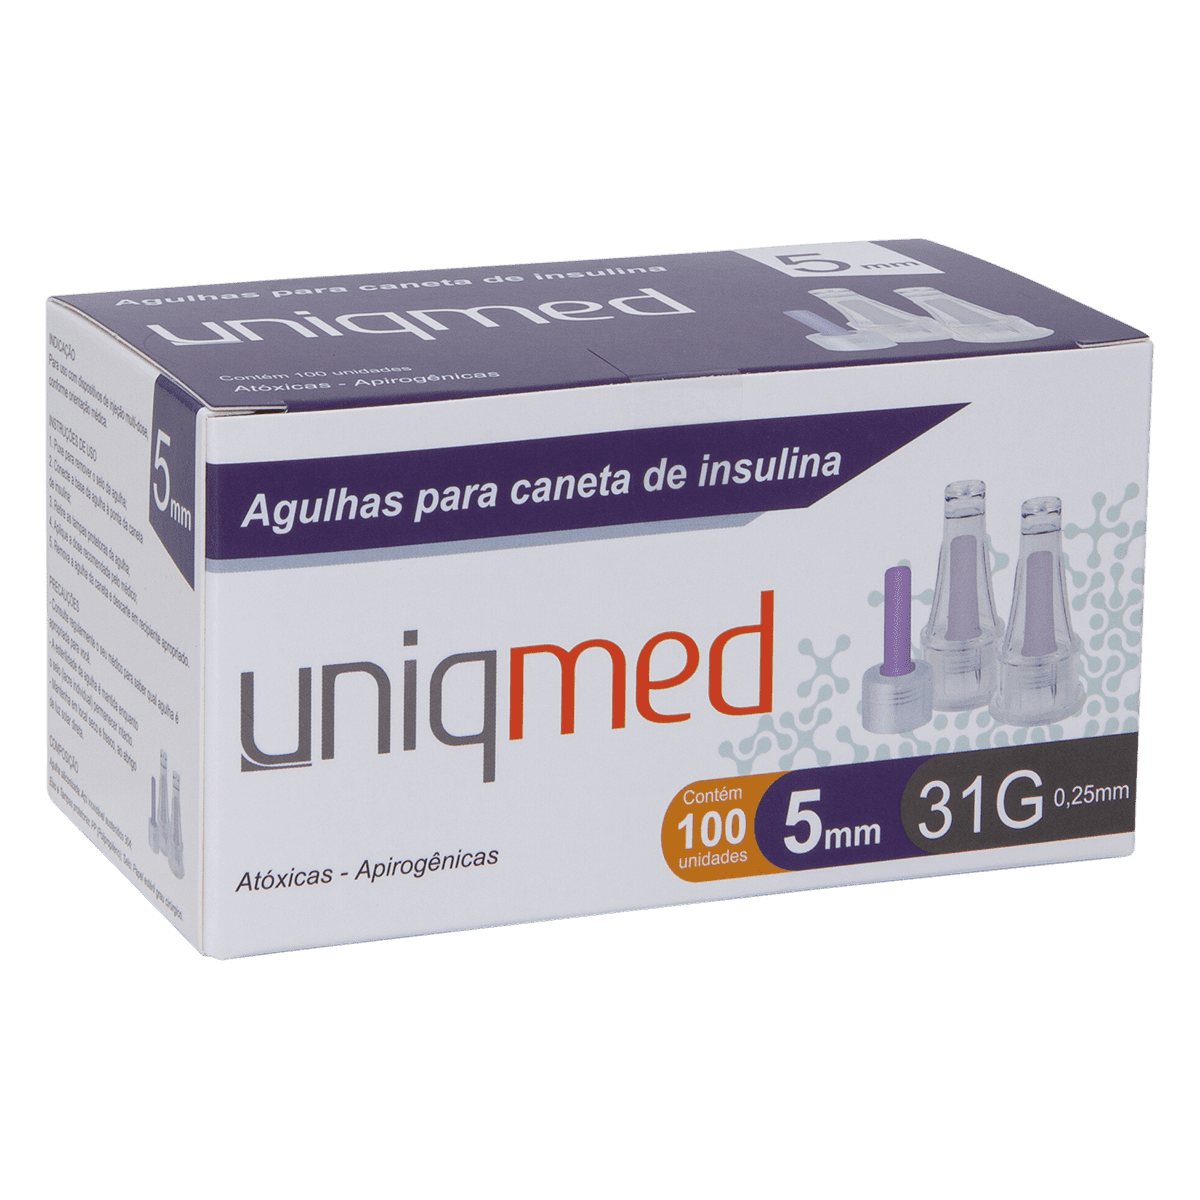 Agulhas para Caneta de Insulina Uniqmed 5mm x 31G (0.25mm) - Caixa com 100 unidades